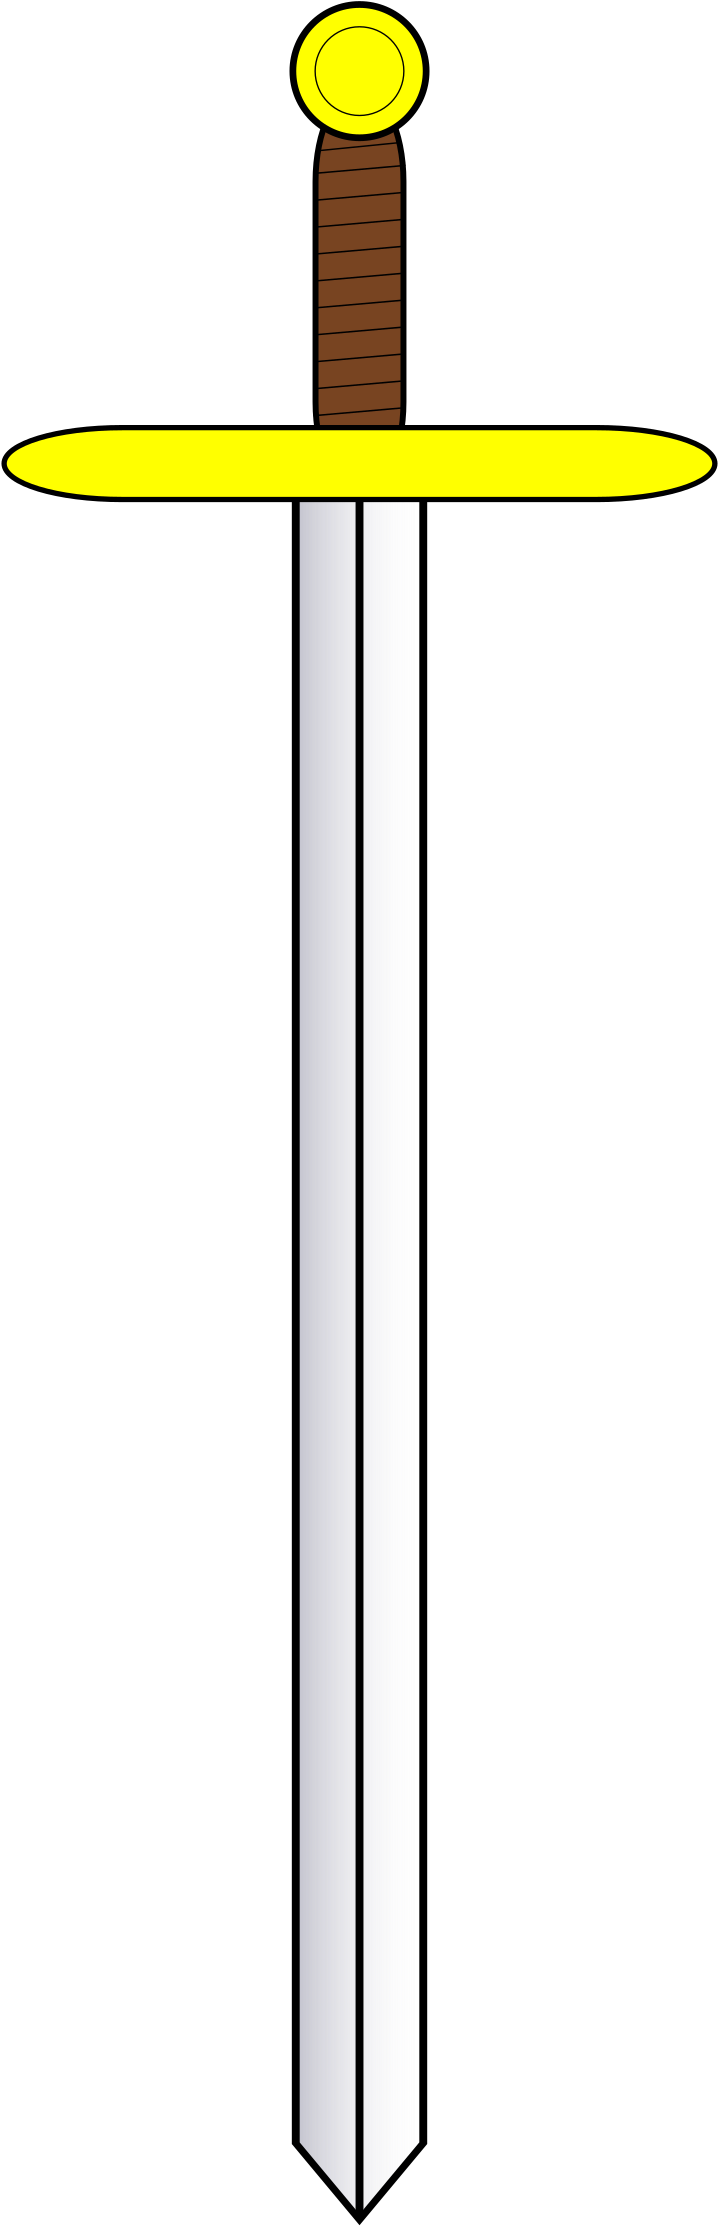 Big Image - Sword Heraldry (1697x2400)